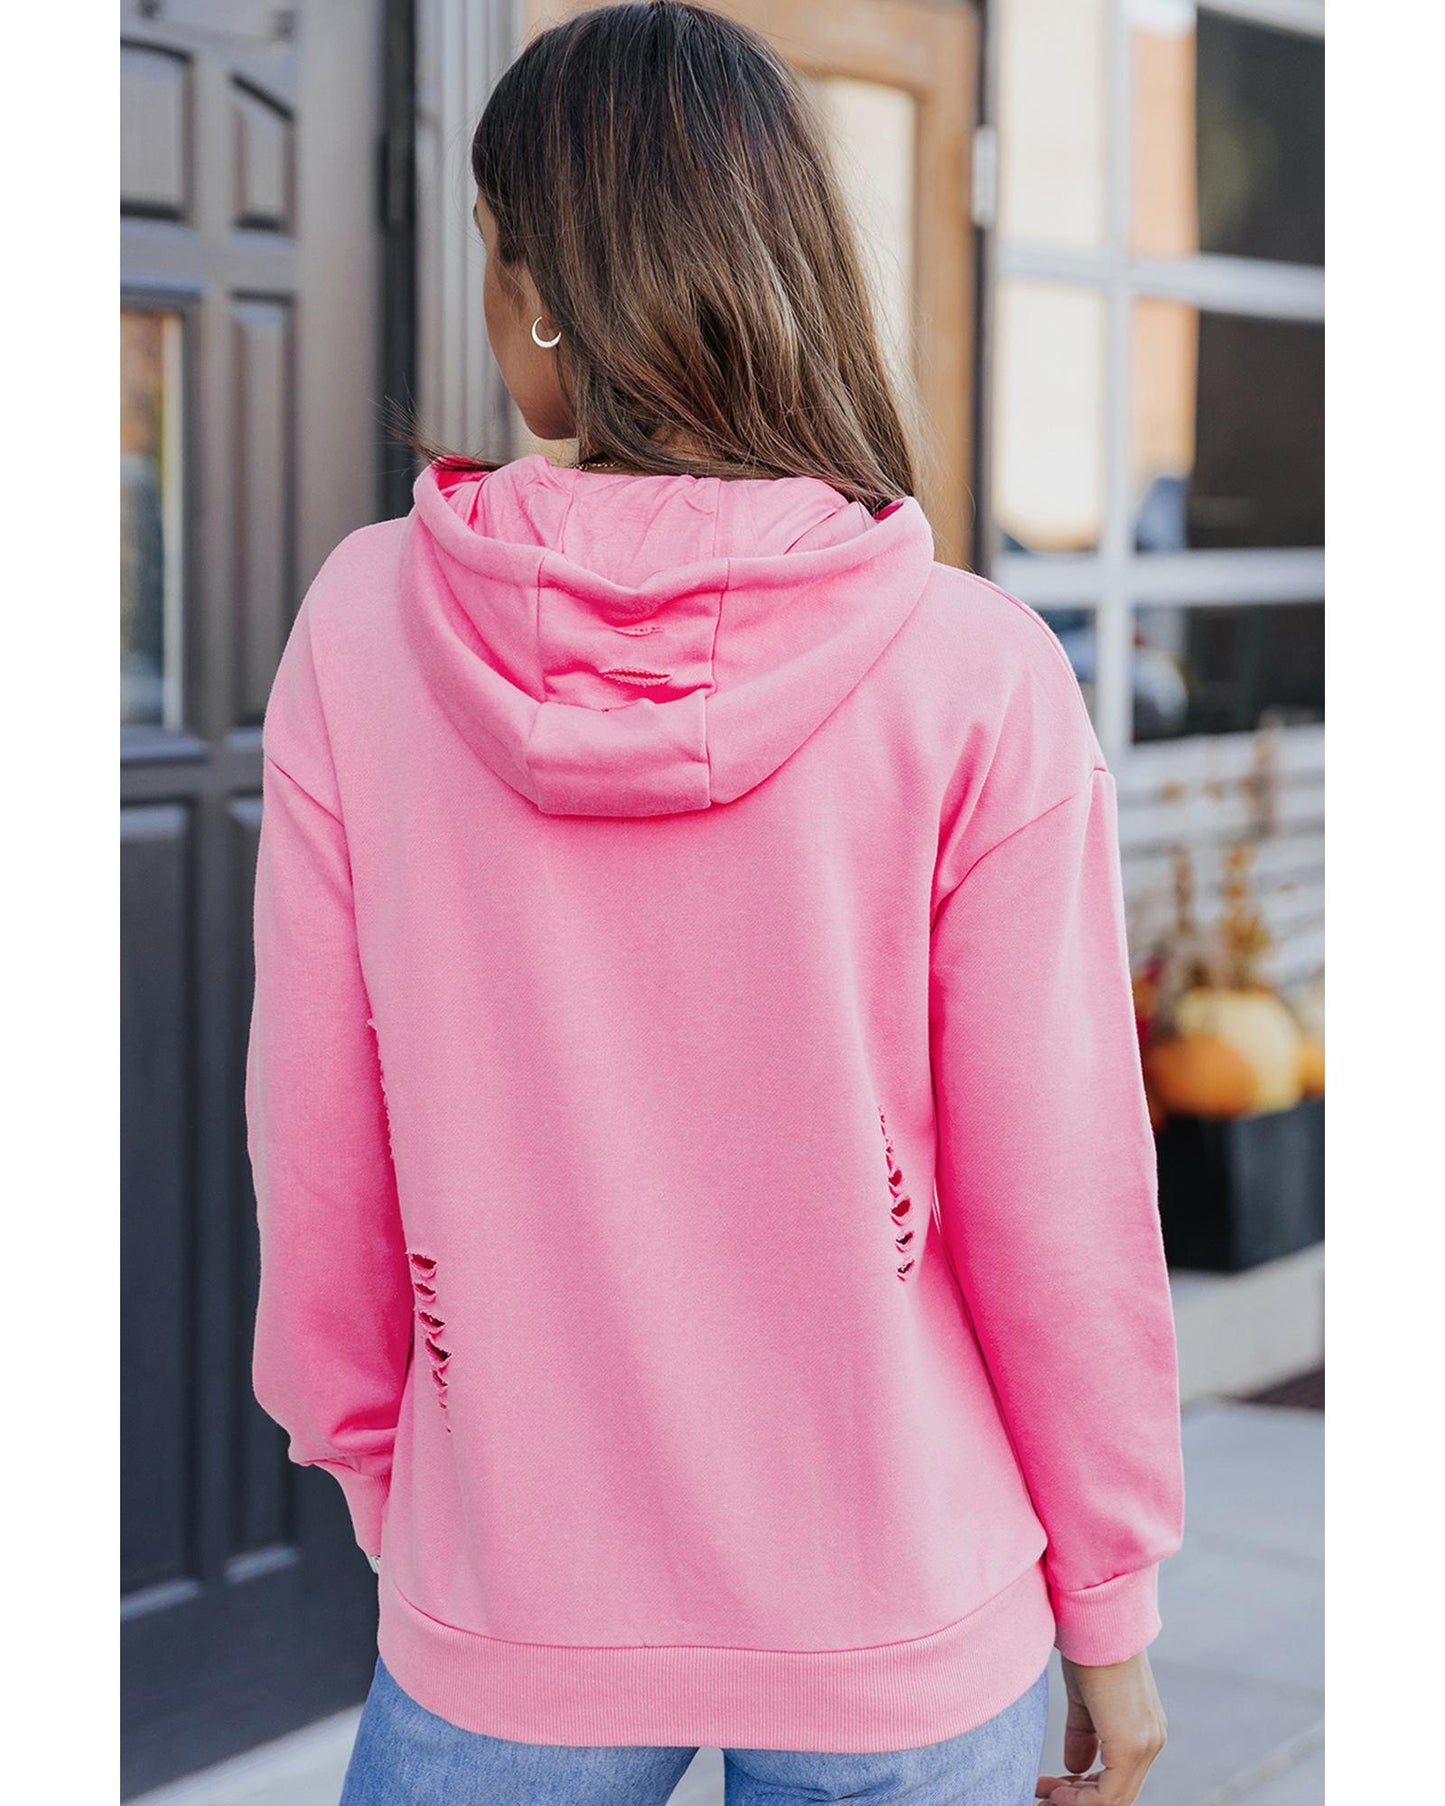 Azura Exchange Ripped Hooded Sweatshirt with Kangaroo Pocket - S